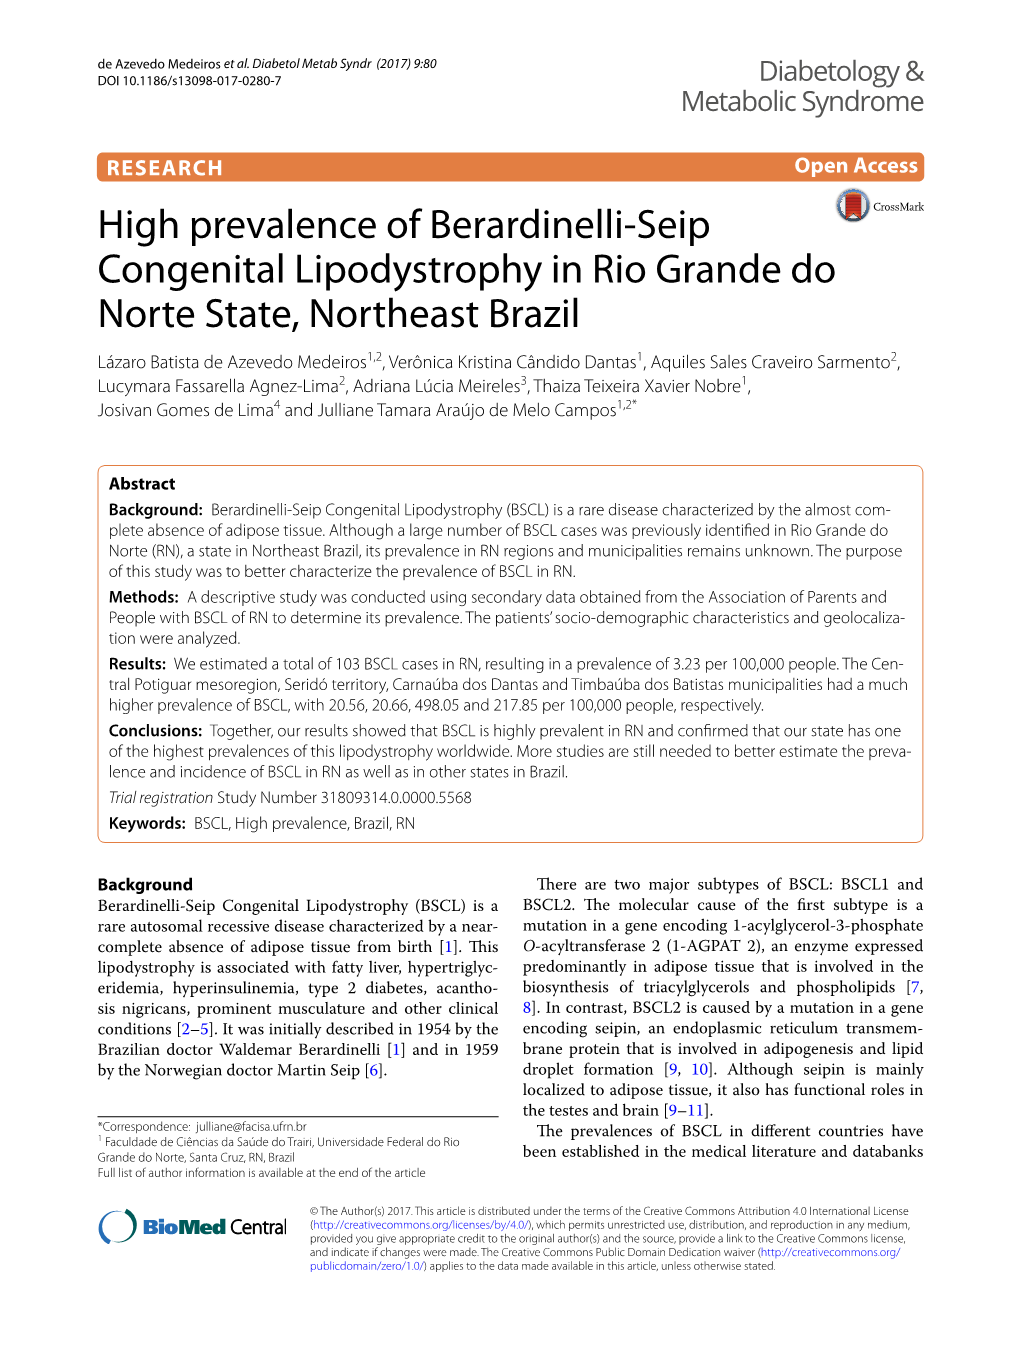 High Prevalence of Berardinelli-Seip Congenital Lipodystrophy in Rio Grande Do Norte State, Northeast Brazil